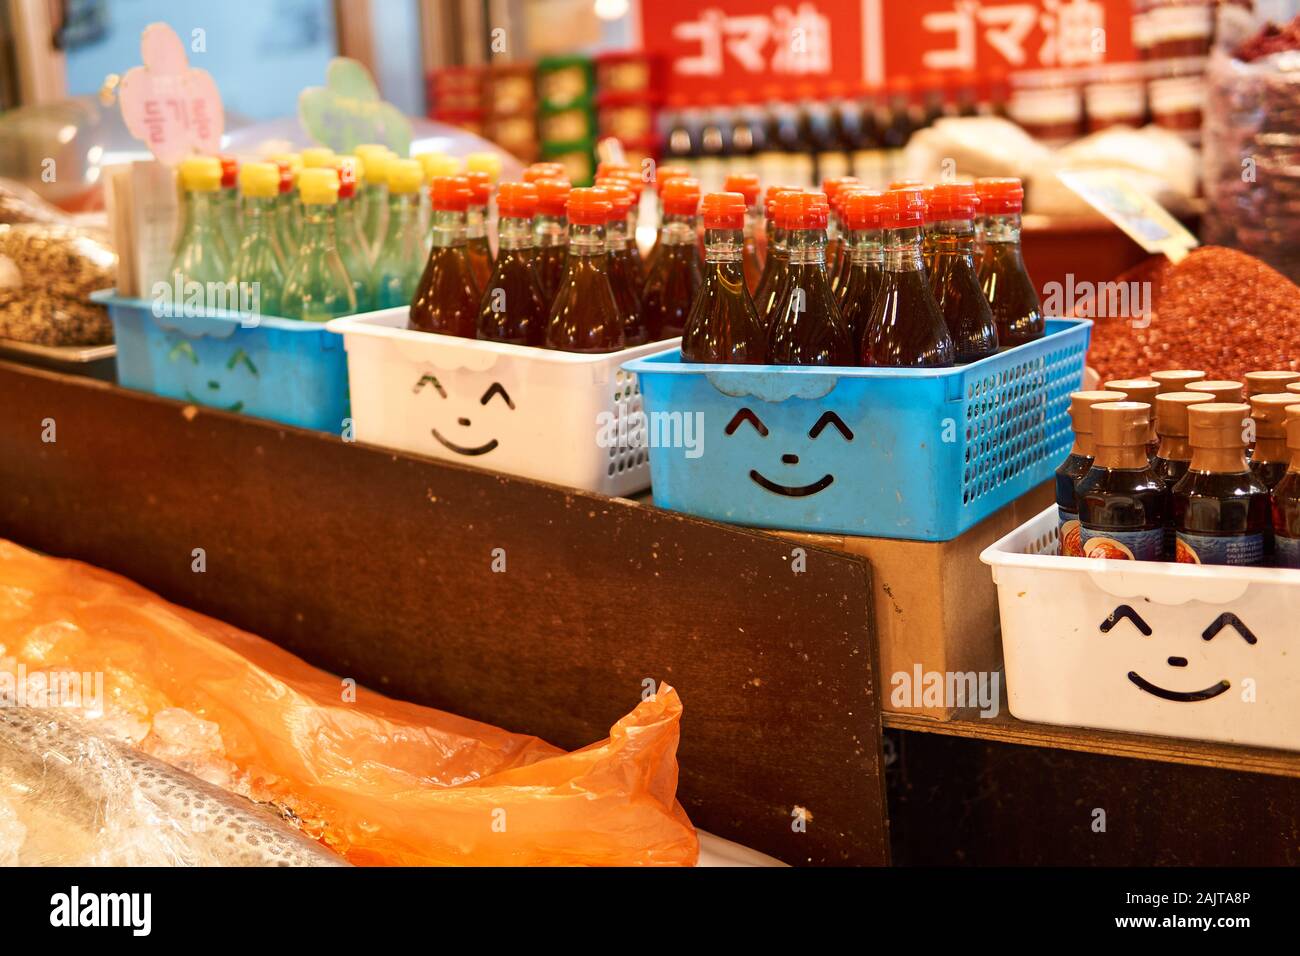 Des paniers en plastique bleu et blanc avec des visages émoiji souriants se coupent dans eux en tenant des sauces au marché de Gwangjang à Séoul, en Corée du Sud. Banque D'Images